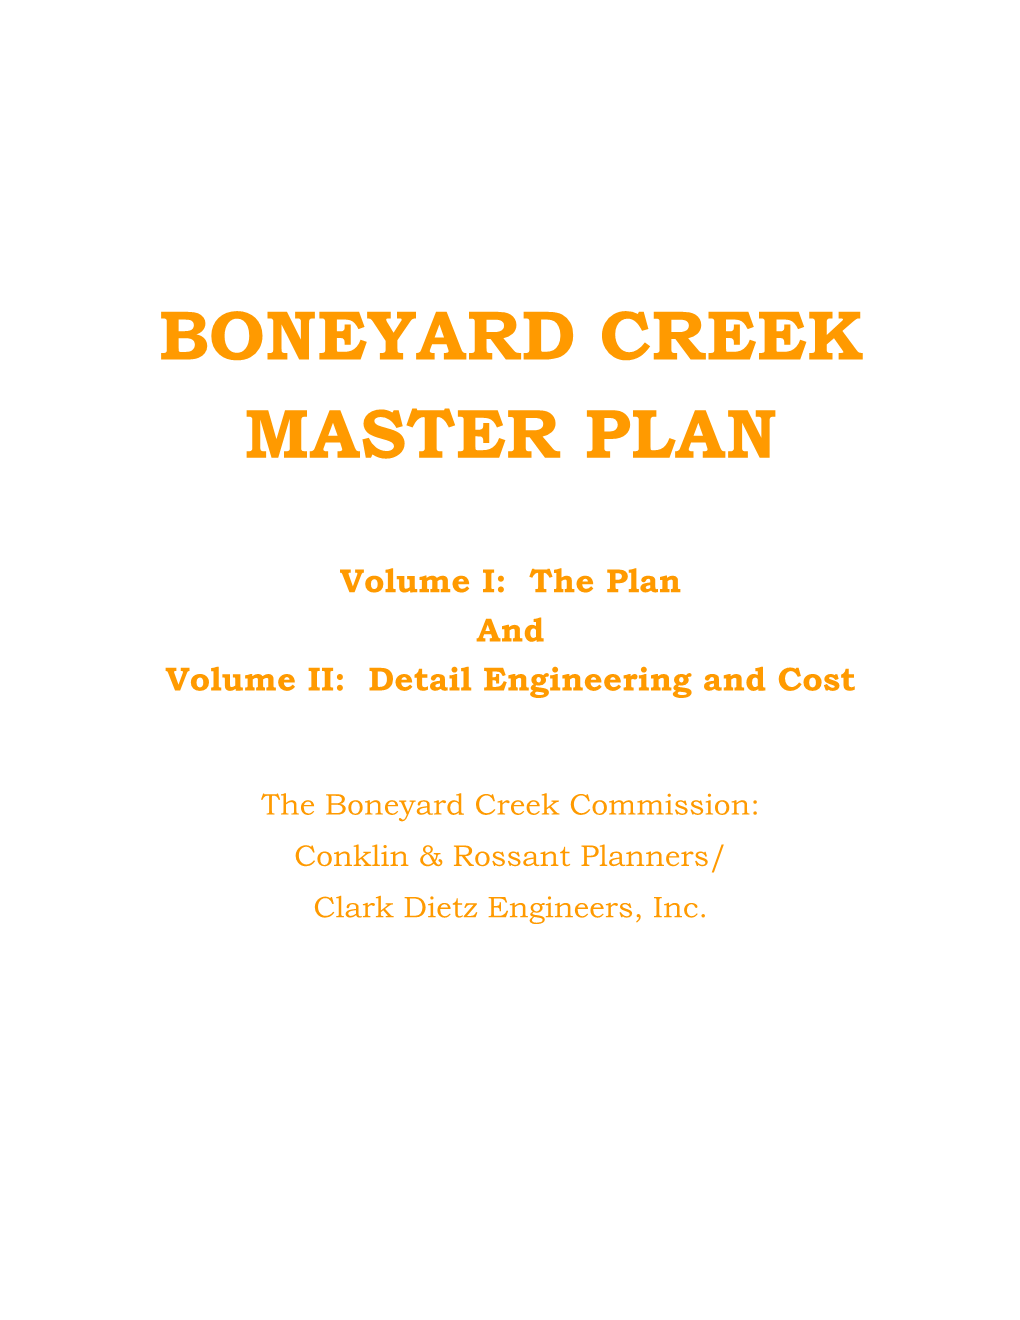 1978 Boneyard Creek Master Plan